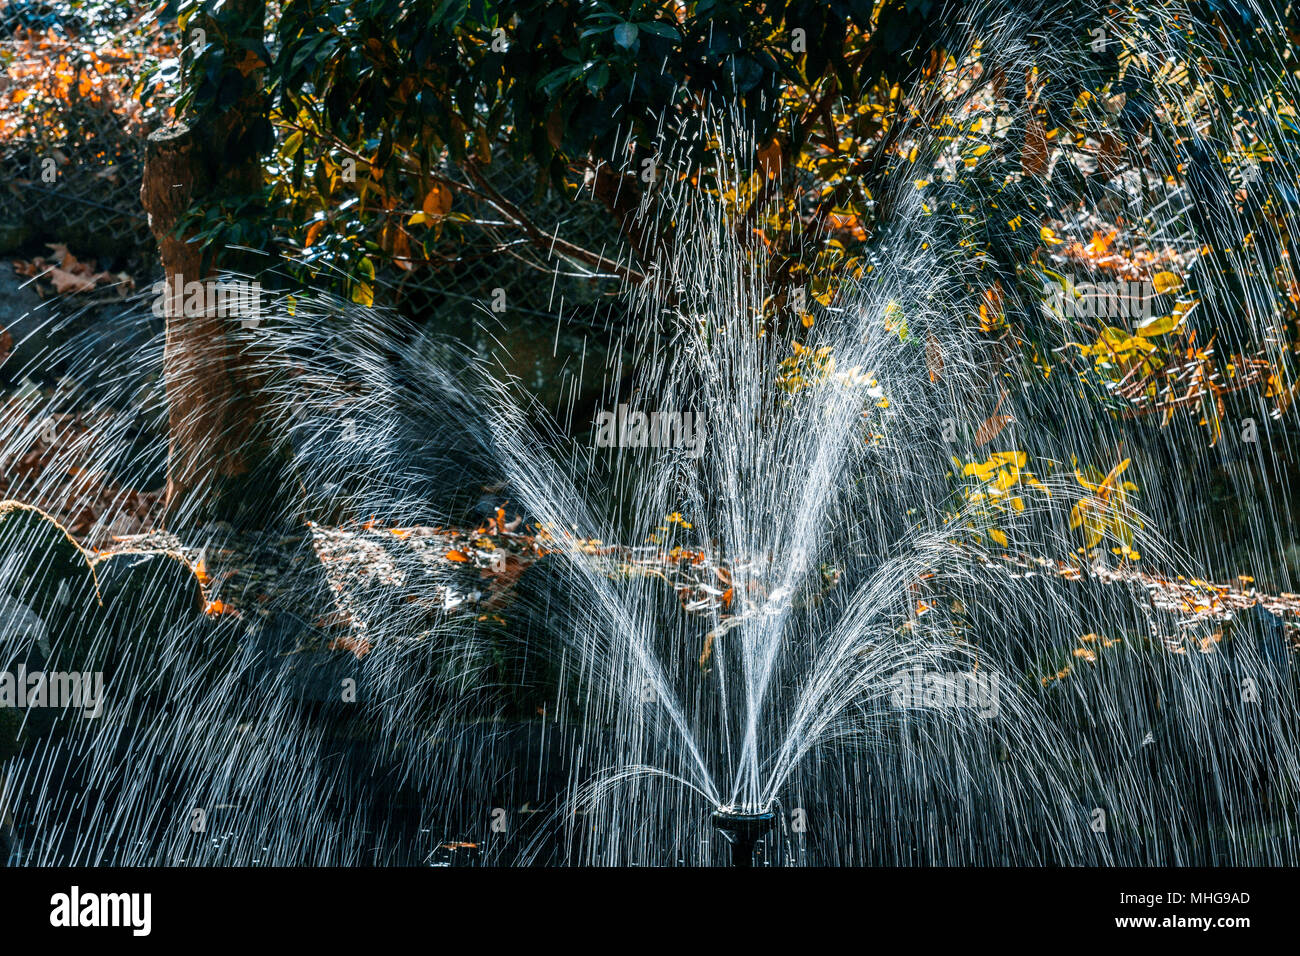 Petite fontaine dans un jardin en automne Banque D'Images